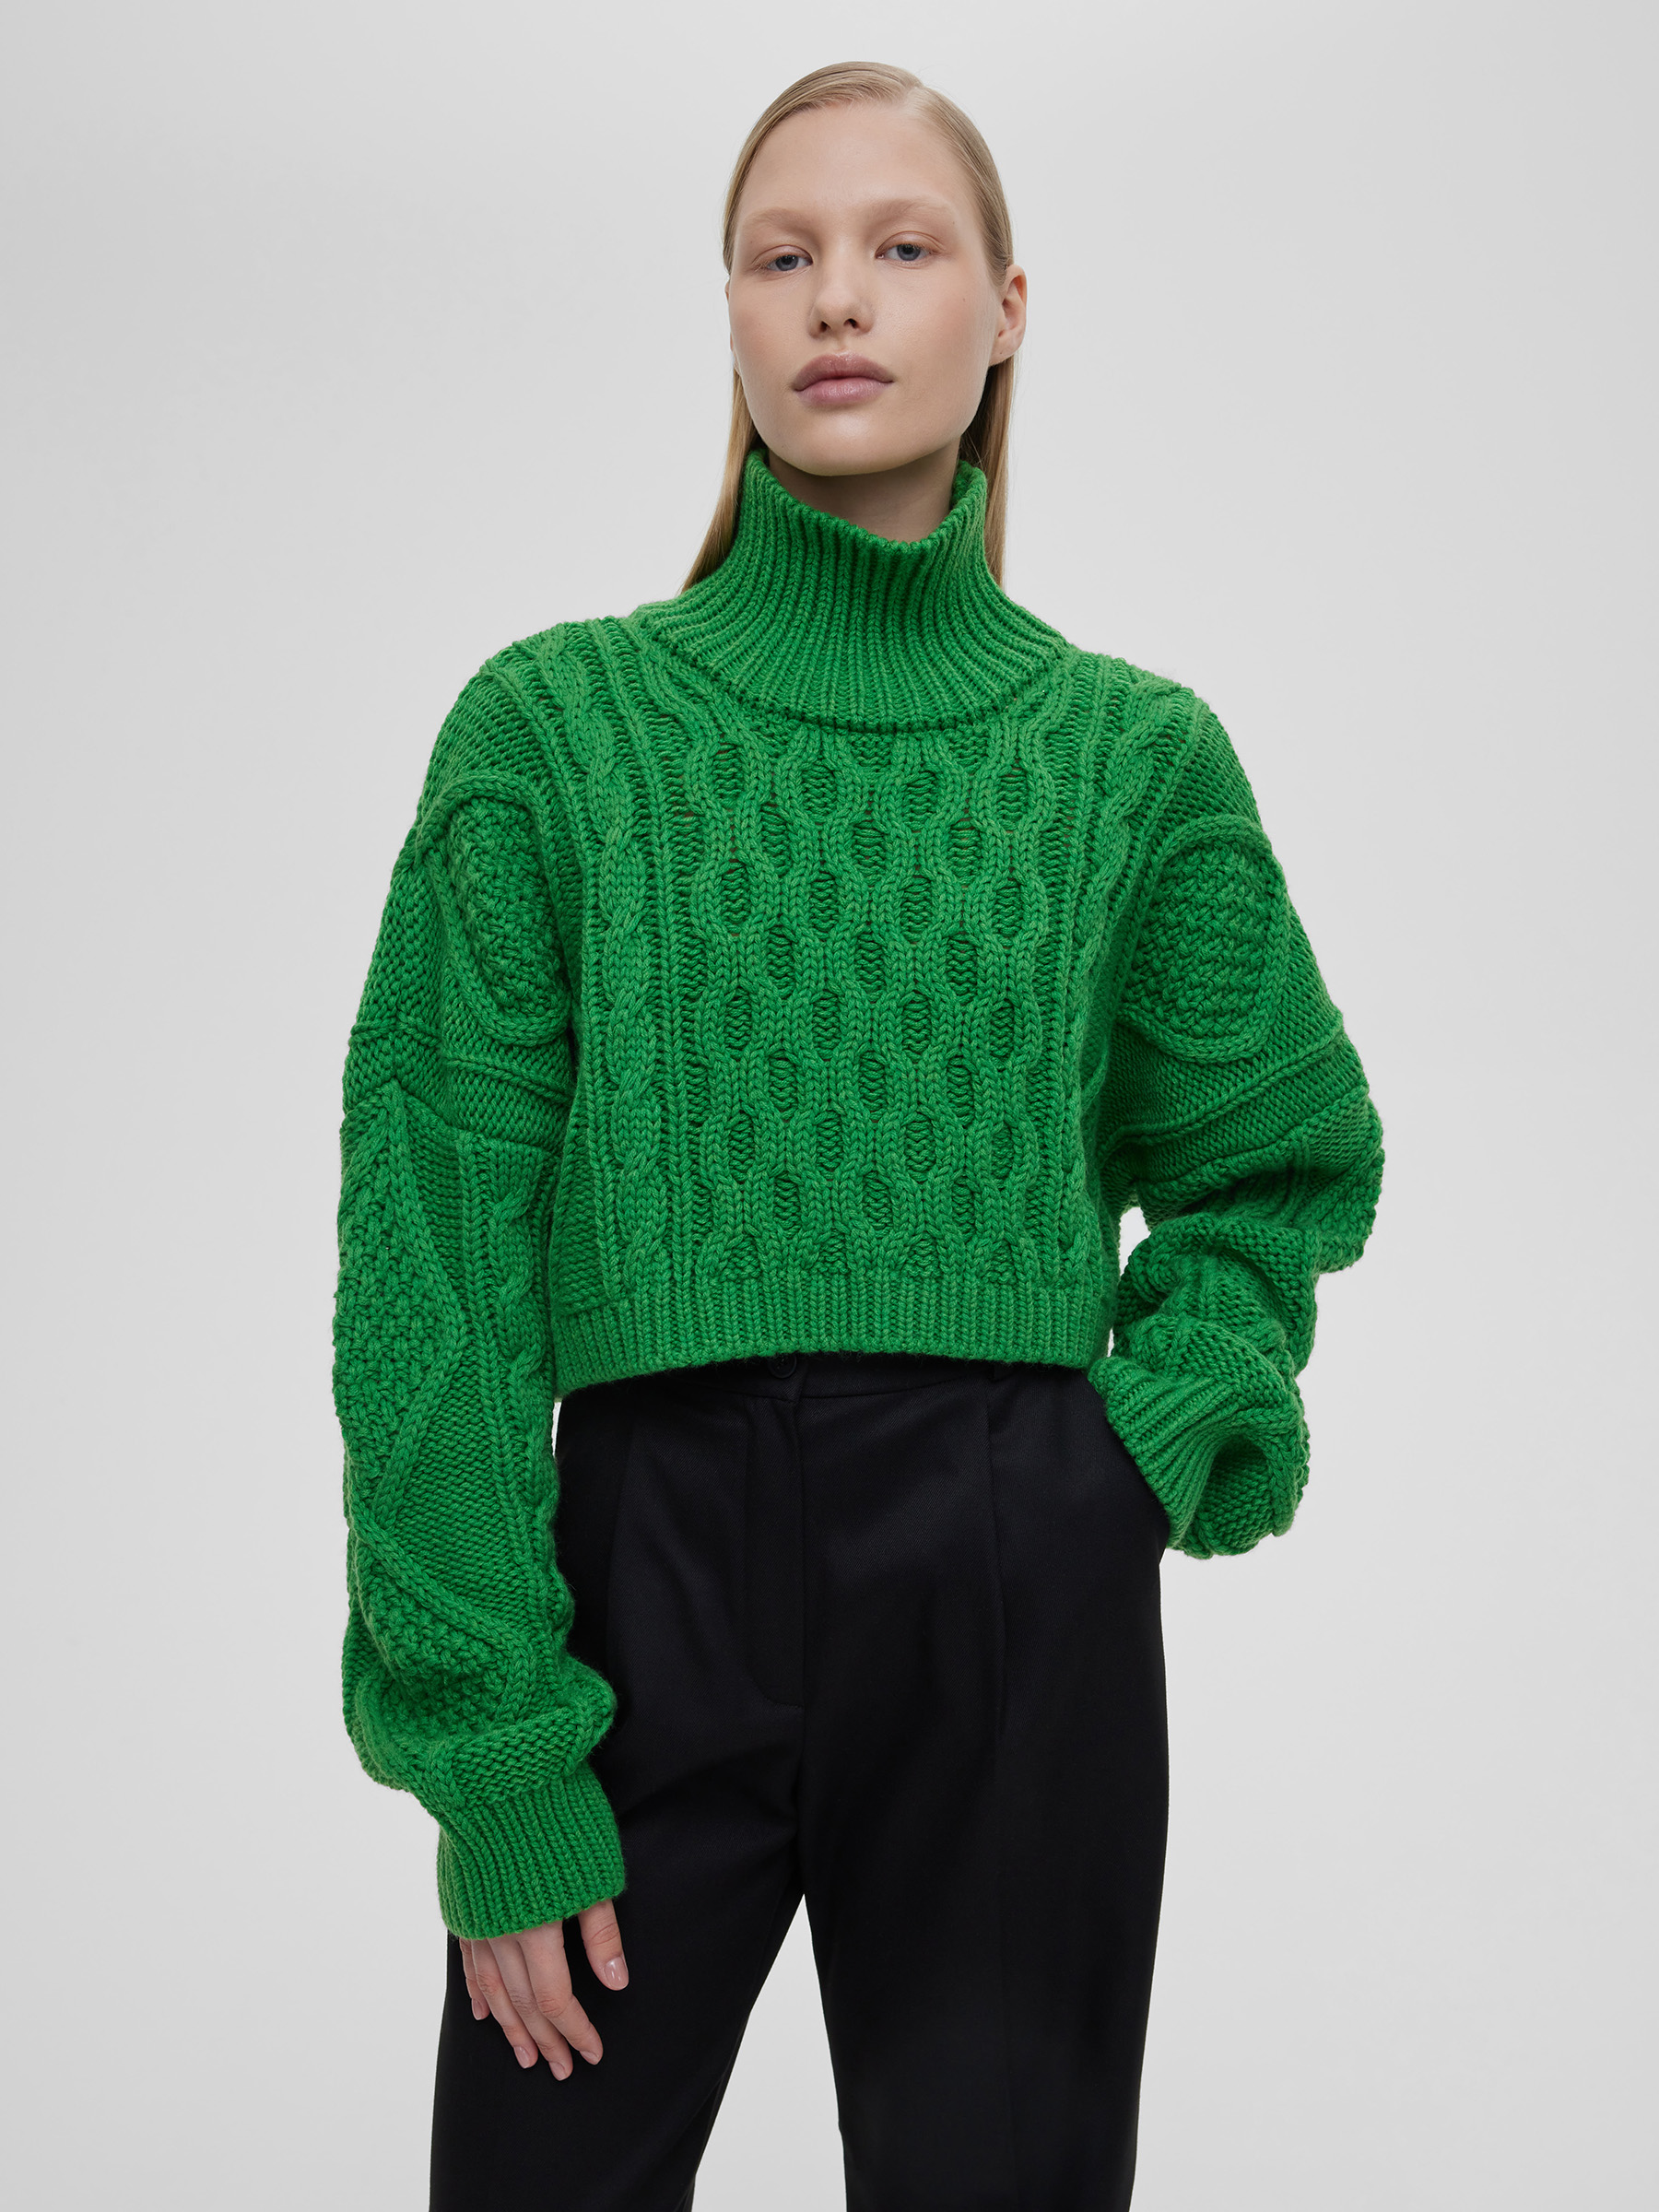 Свитер женский короткий с аранами, цвет – зеленый свитер женский крупной вязки из шерсти цвет – кофейный